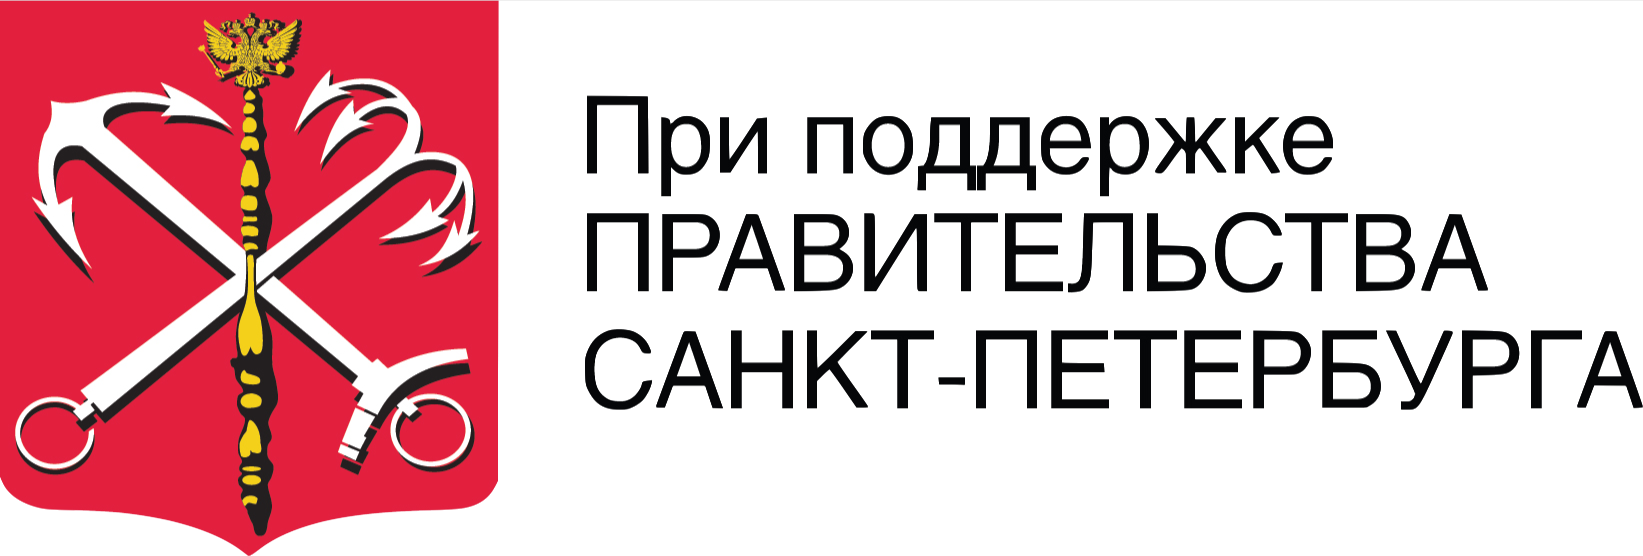 Администрация г санкт. Правительство Санкт-Петербурга лого. Комитет по культуре Санкт-Петербурга лого. Администрация Санкт-Петербурга логотип. Логотип правителсттвасанкт-Петербурга.